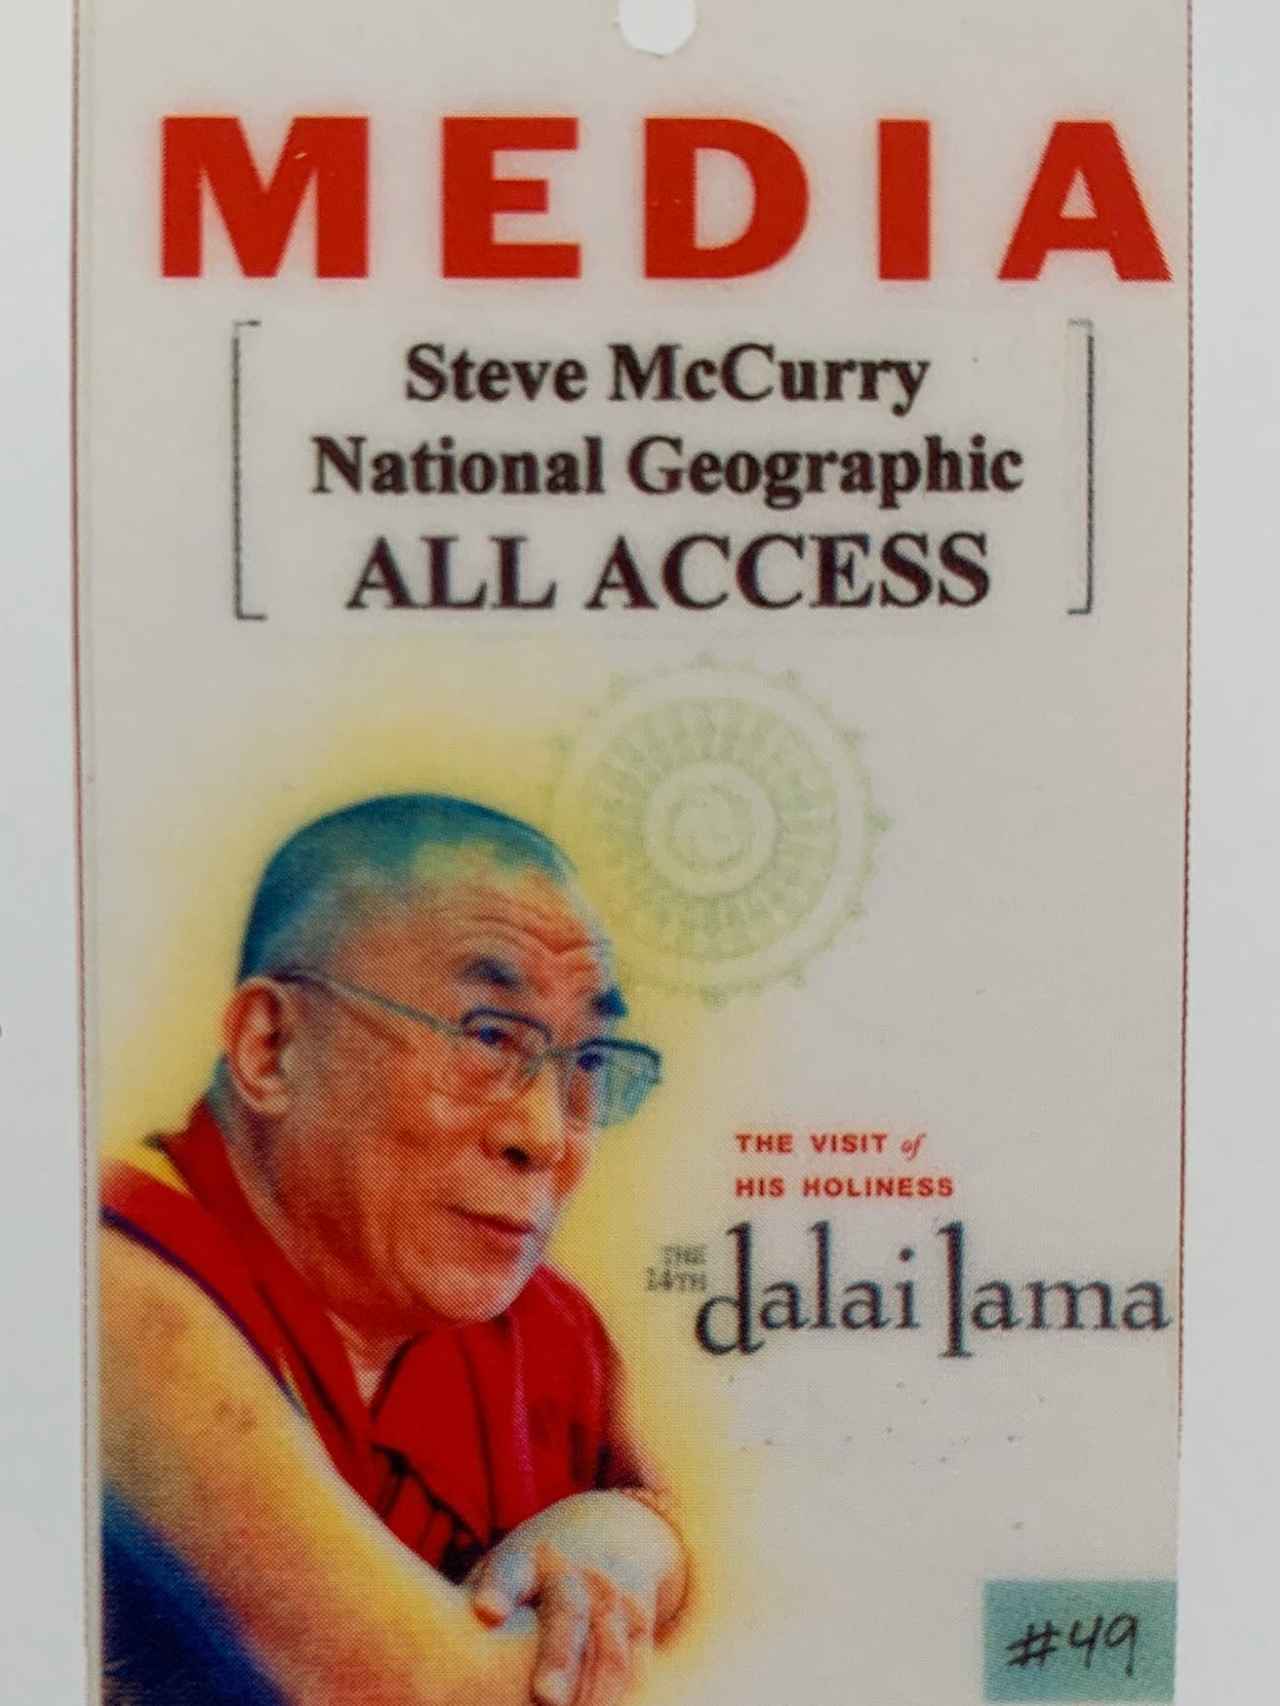 El “All Access” de Steve McCurry para fotografiar al Dalai Lama, con cámaras asiáticas